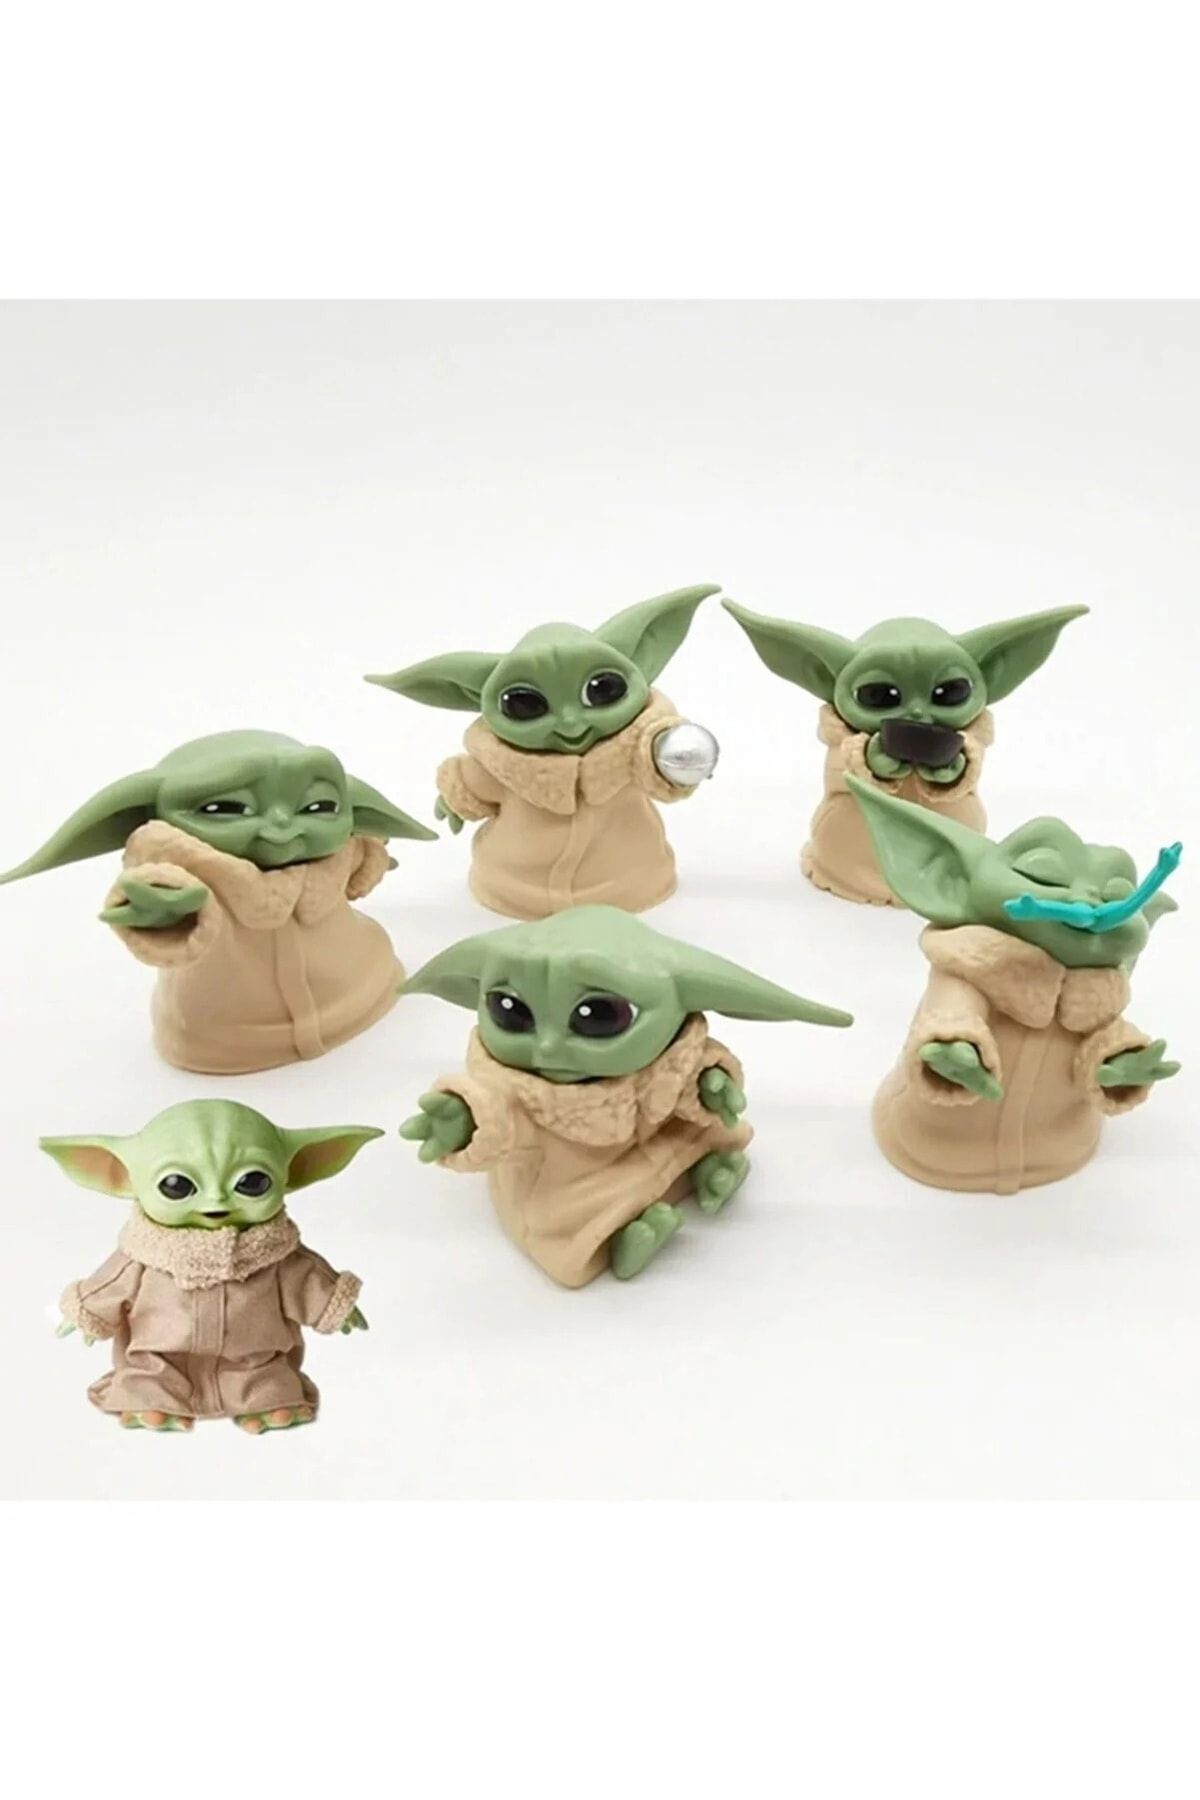 HEPBİMODA Star Wars 6lı Baby Yoda Figür Seti Oyuncak Karakter